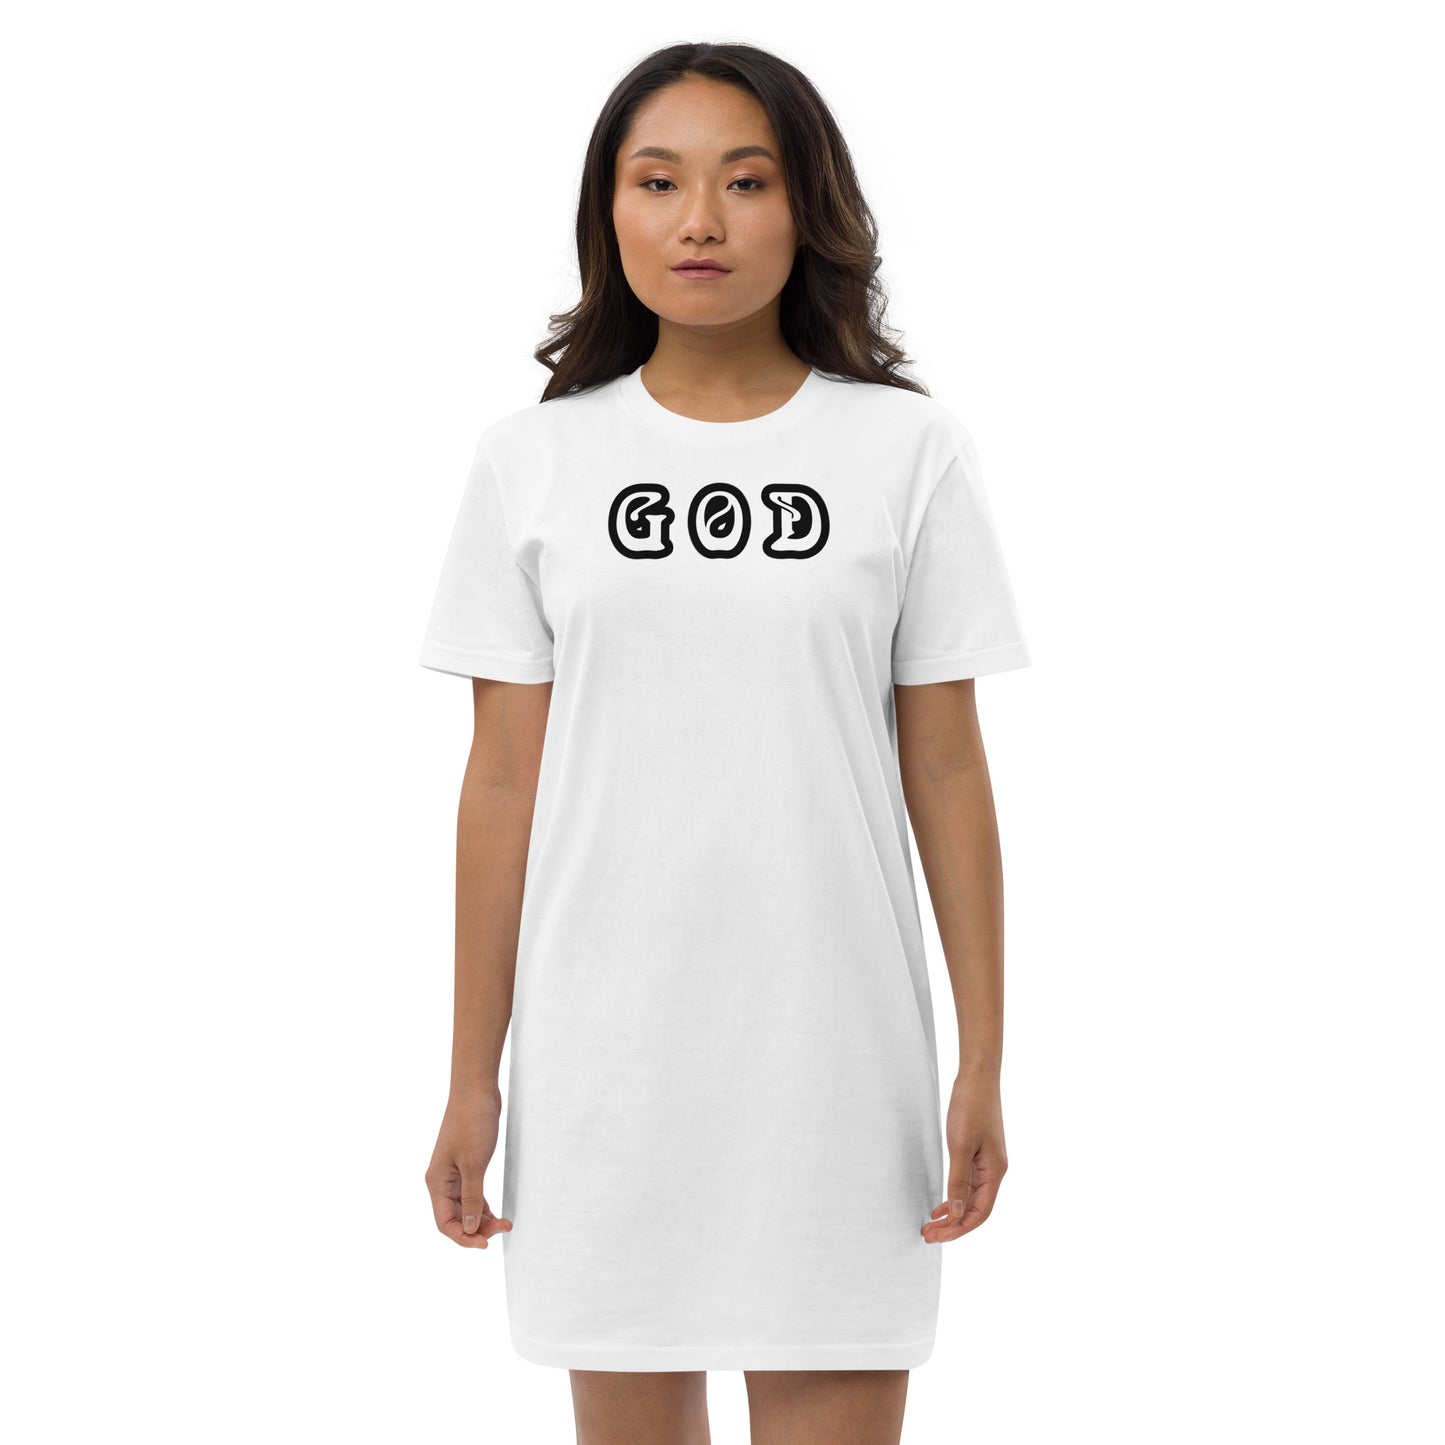 Spiritual t-shirt dress